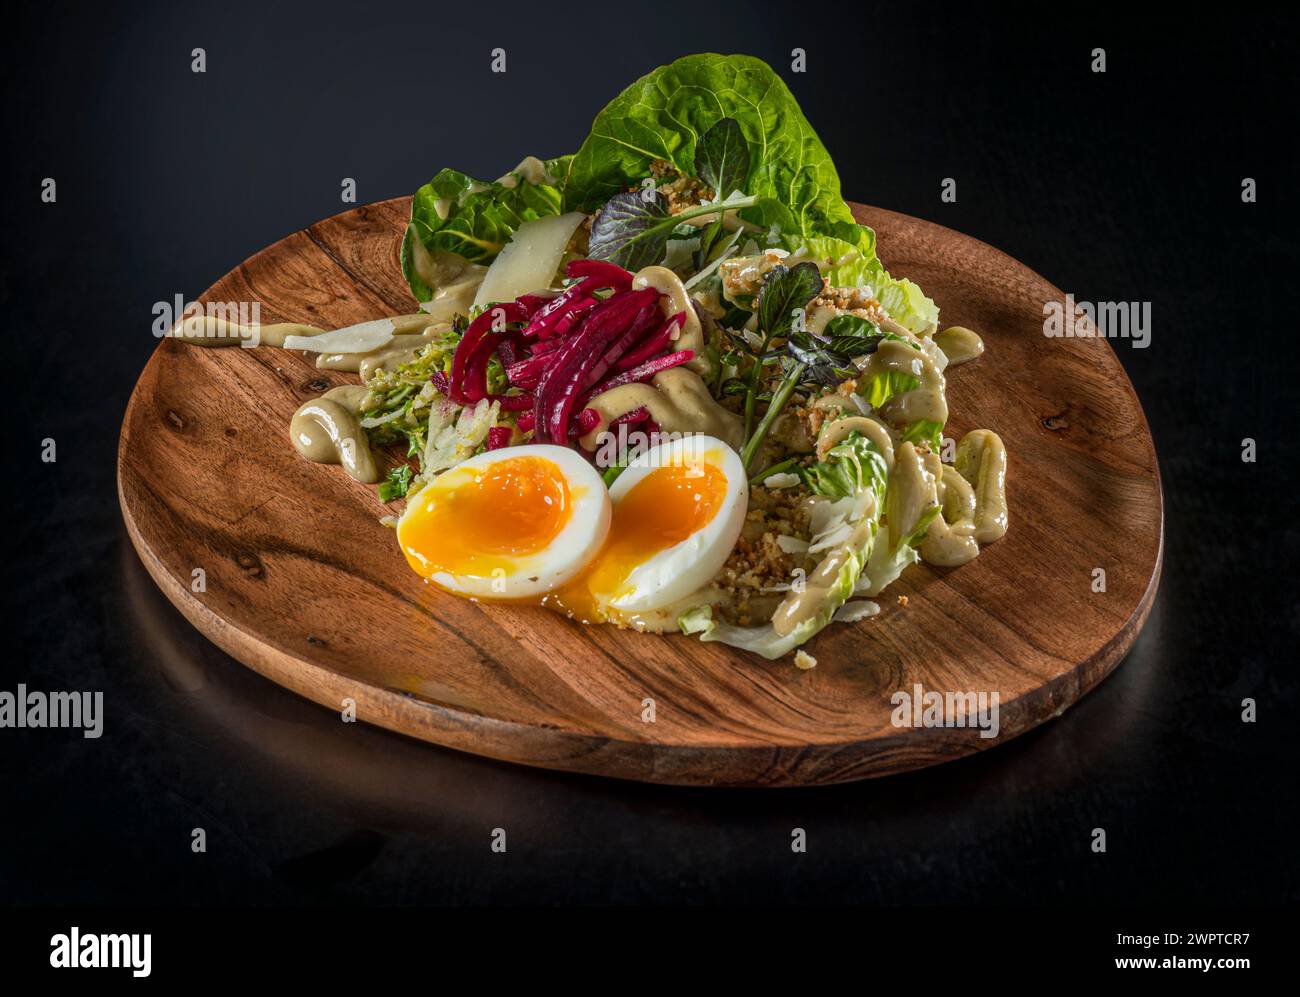 Salade sur assiette en bois avec oeuf dur mou Banque D'Images